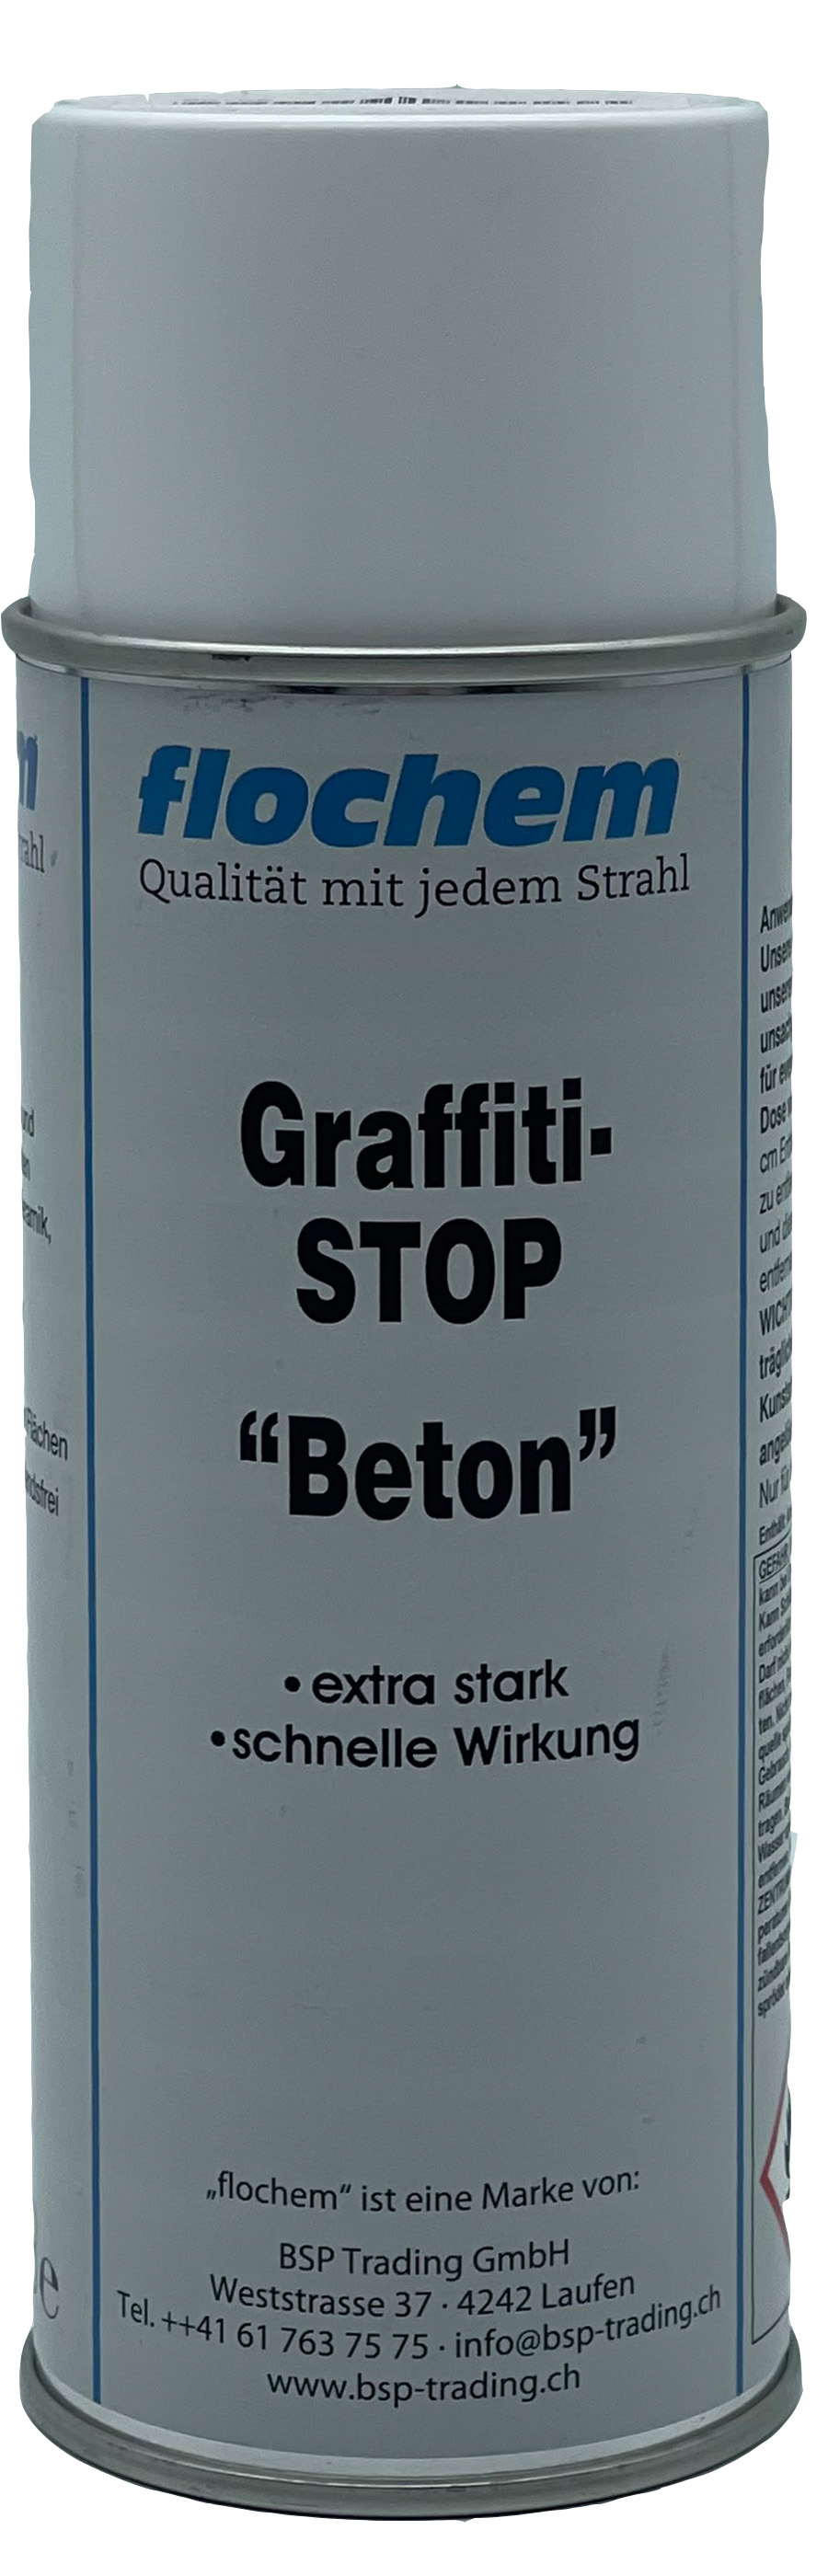 Graffiti-STOP "Beton" 400ml